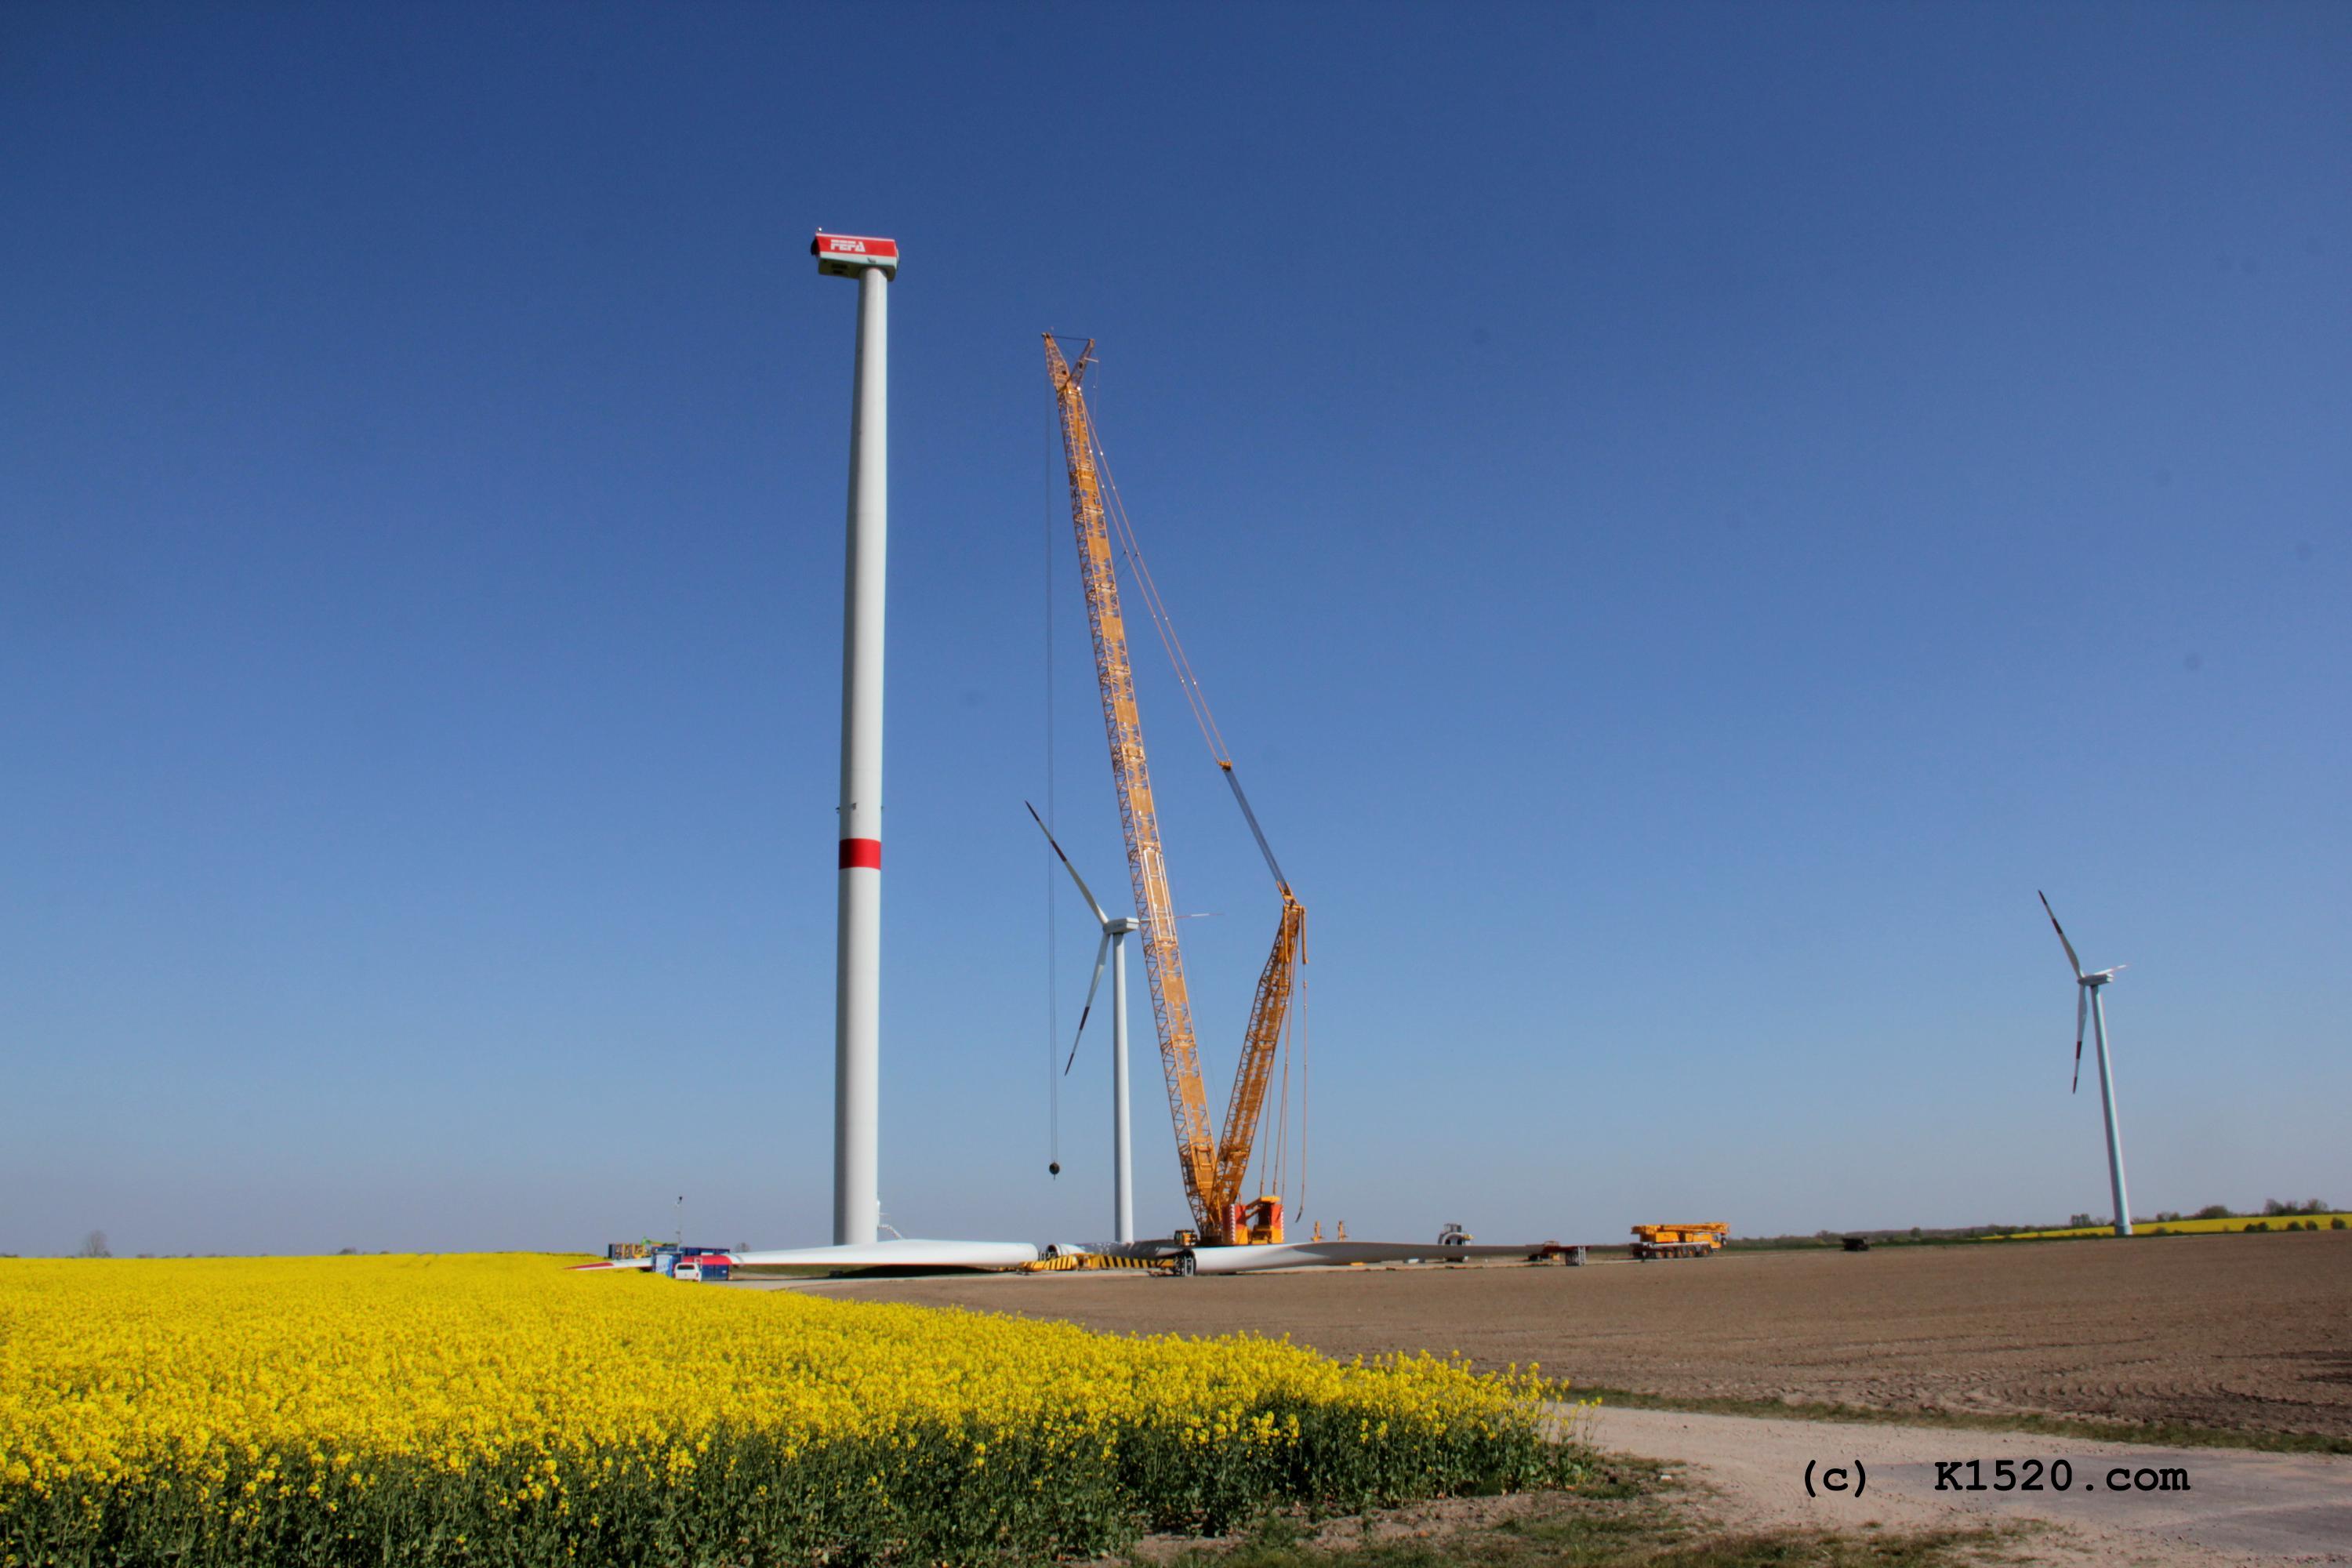 Reparatur Windrder im Windpark Arneburg/Elbe 04/2020,
  Kraneinsatz, Grenvergleich gelber Kran, unten rechts